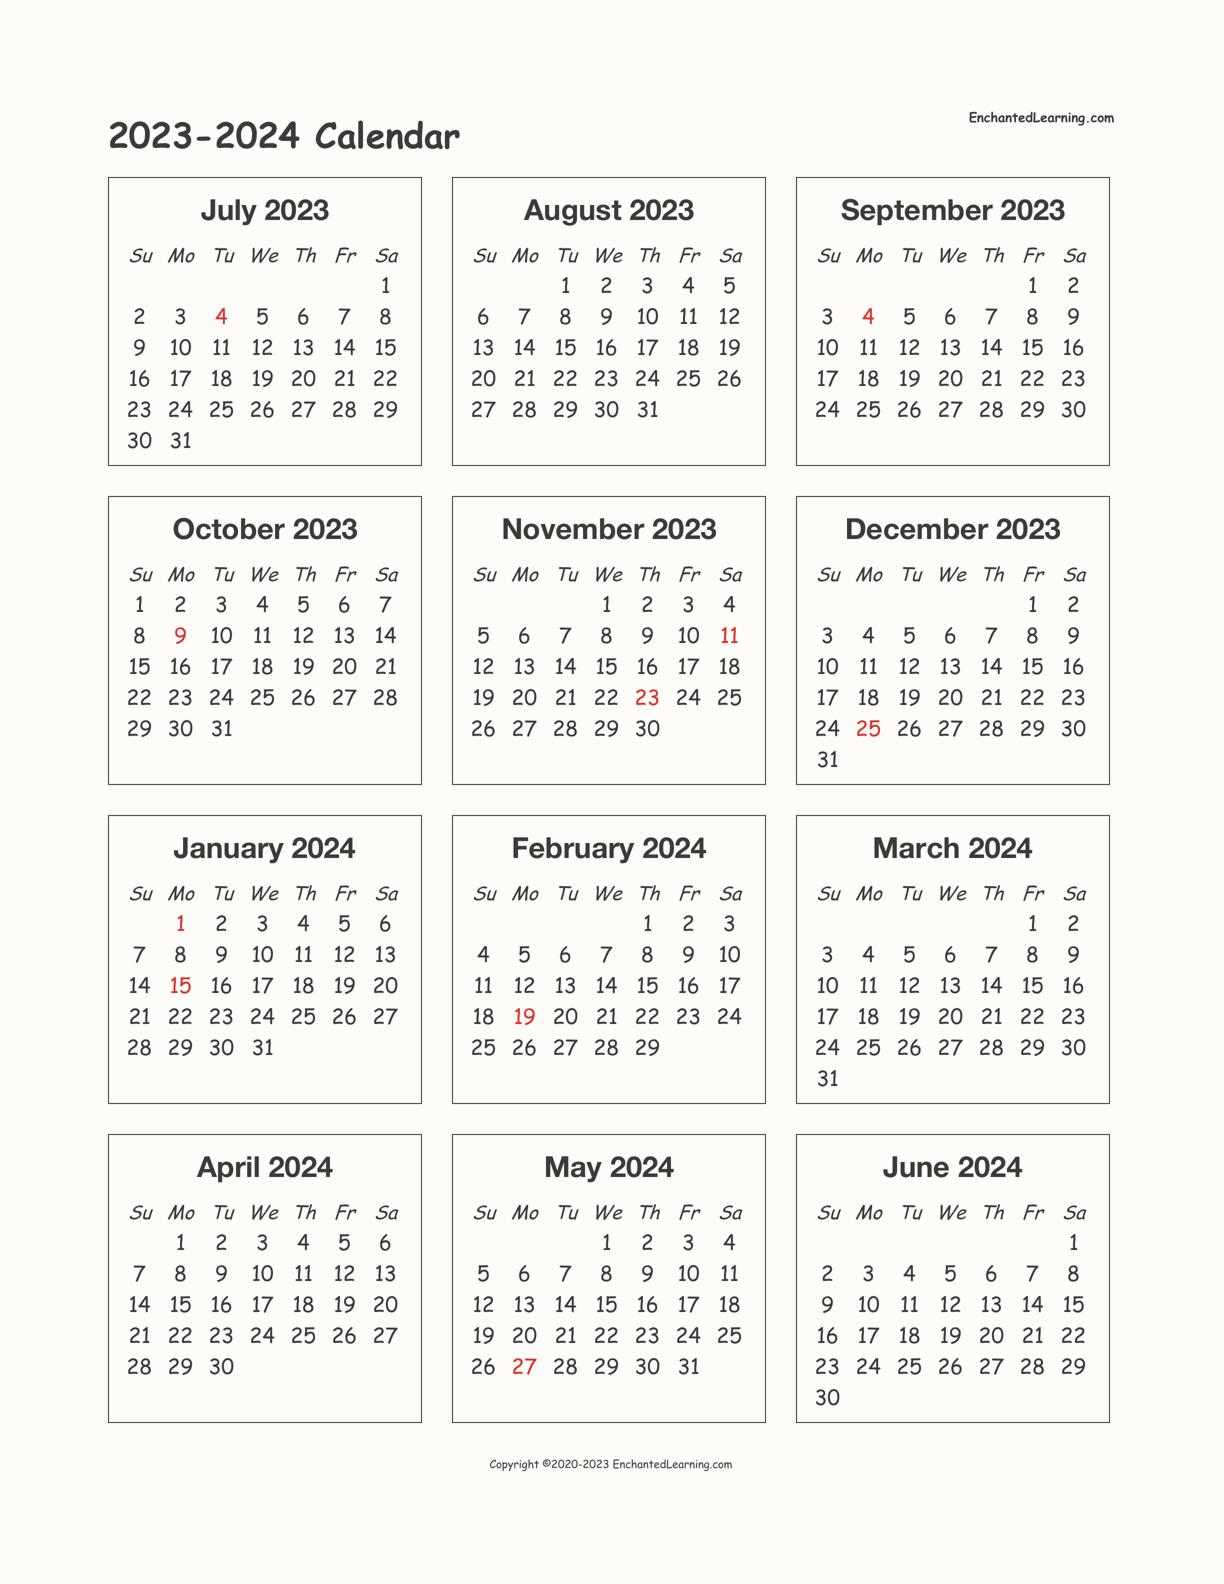 Best Cmu 2023 2024 Calendar Images Calendar Ideas 2023